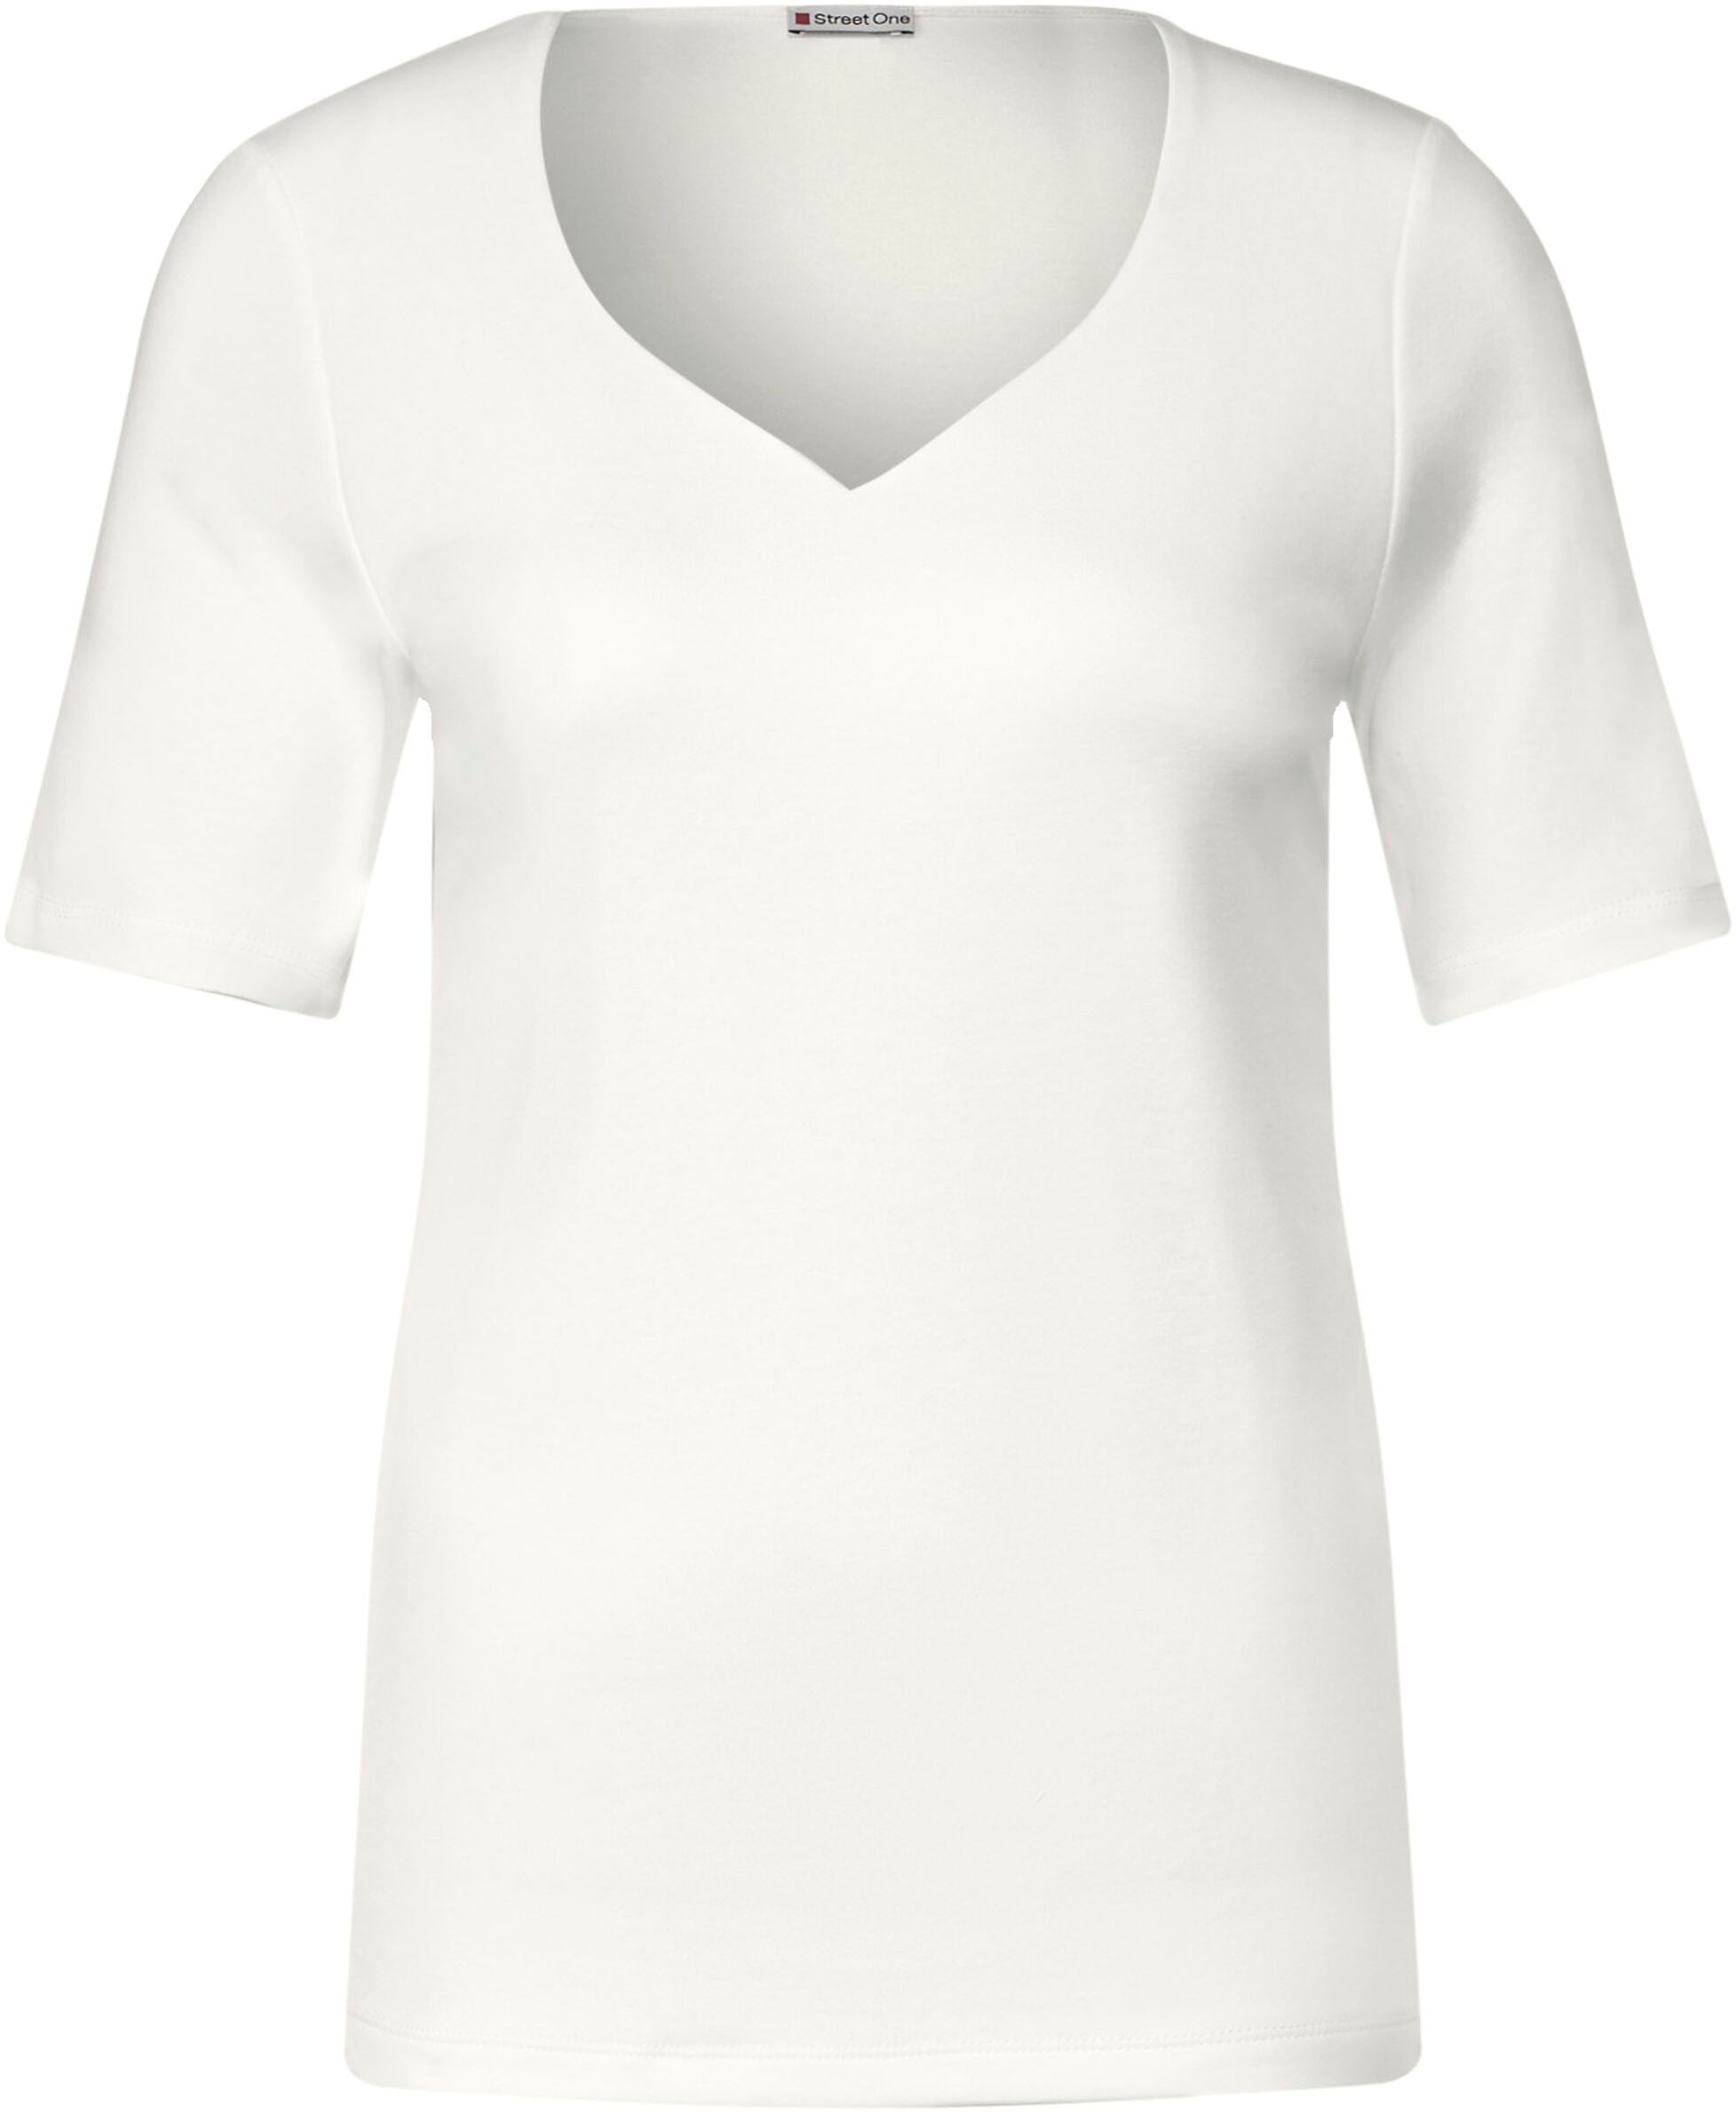 STREET ONE T-Shirt, mit Herz-Ausschnitt kaufen online bei OTTO